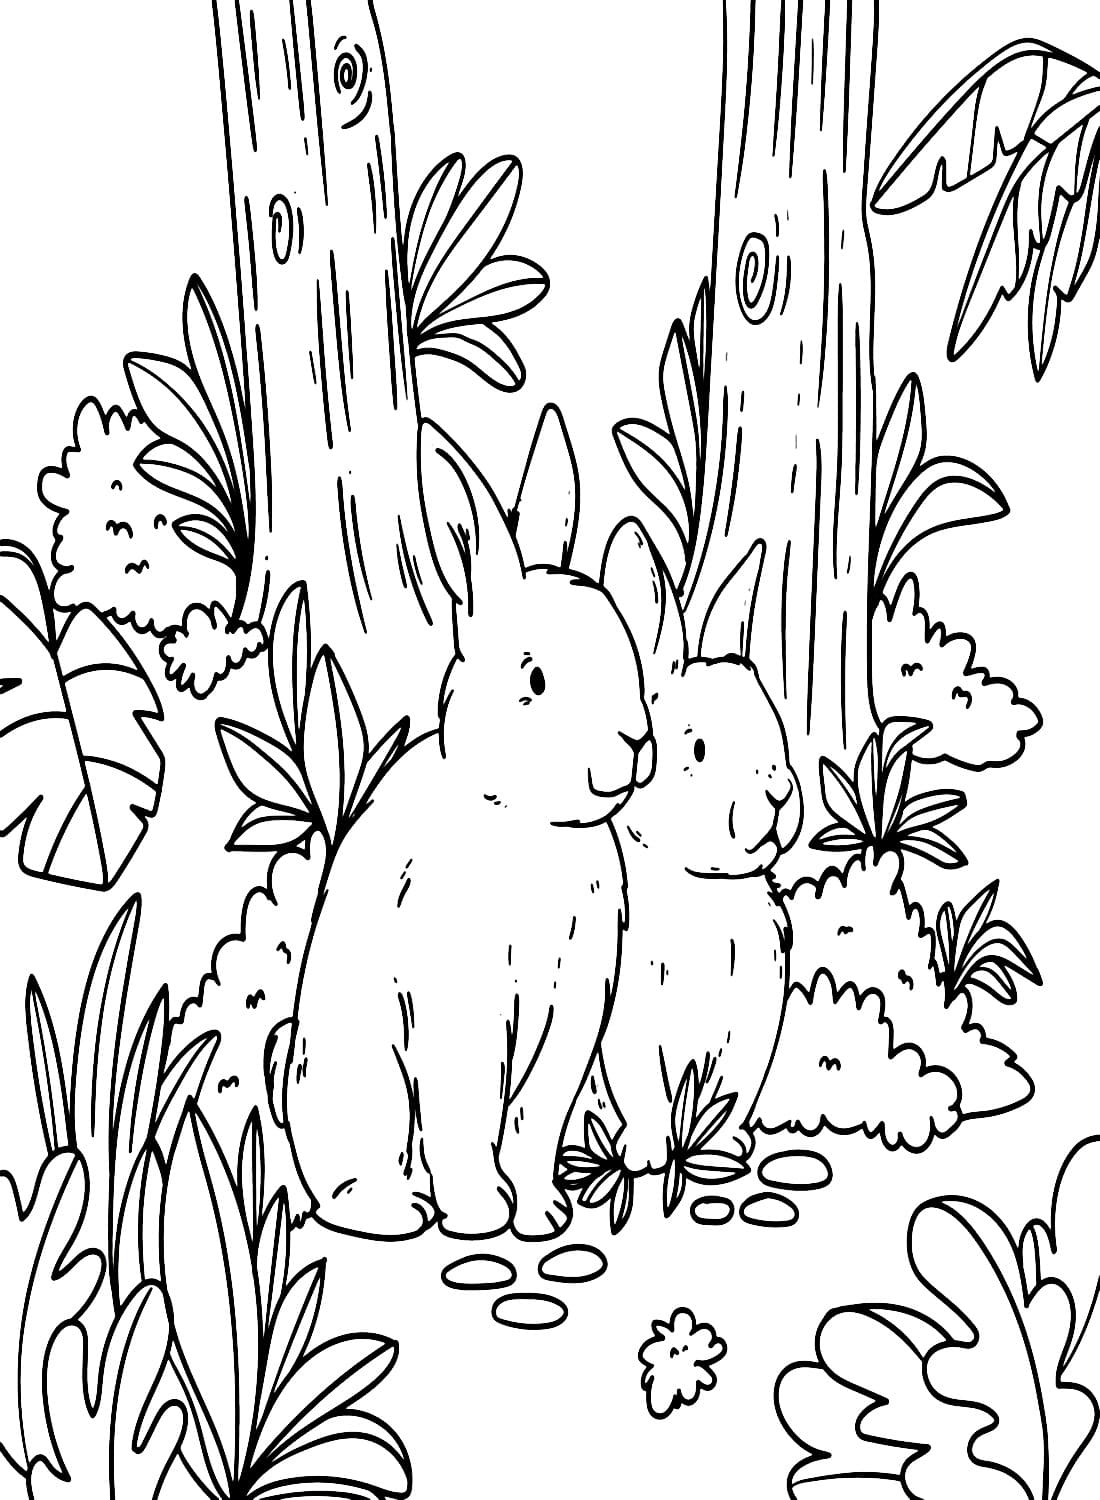 اثنين من الأرانب صورة تلوين